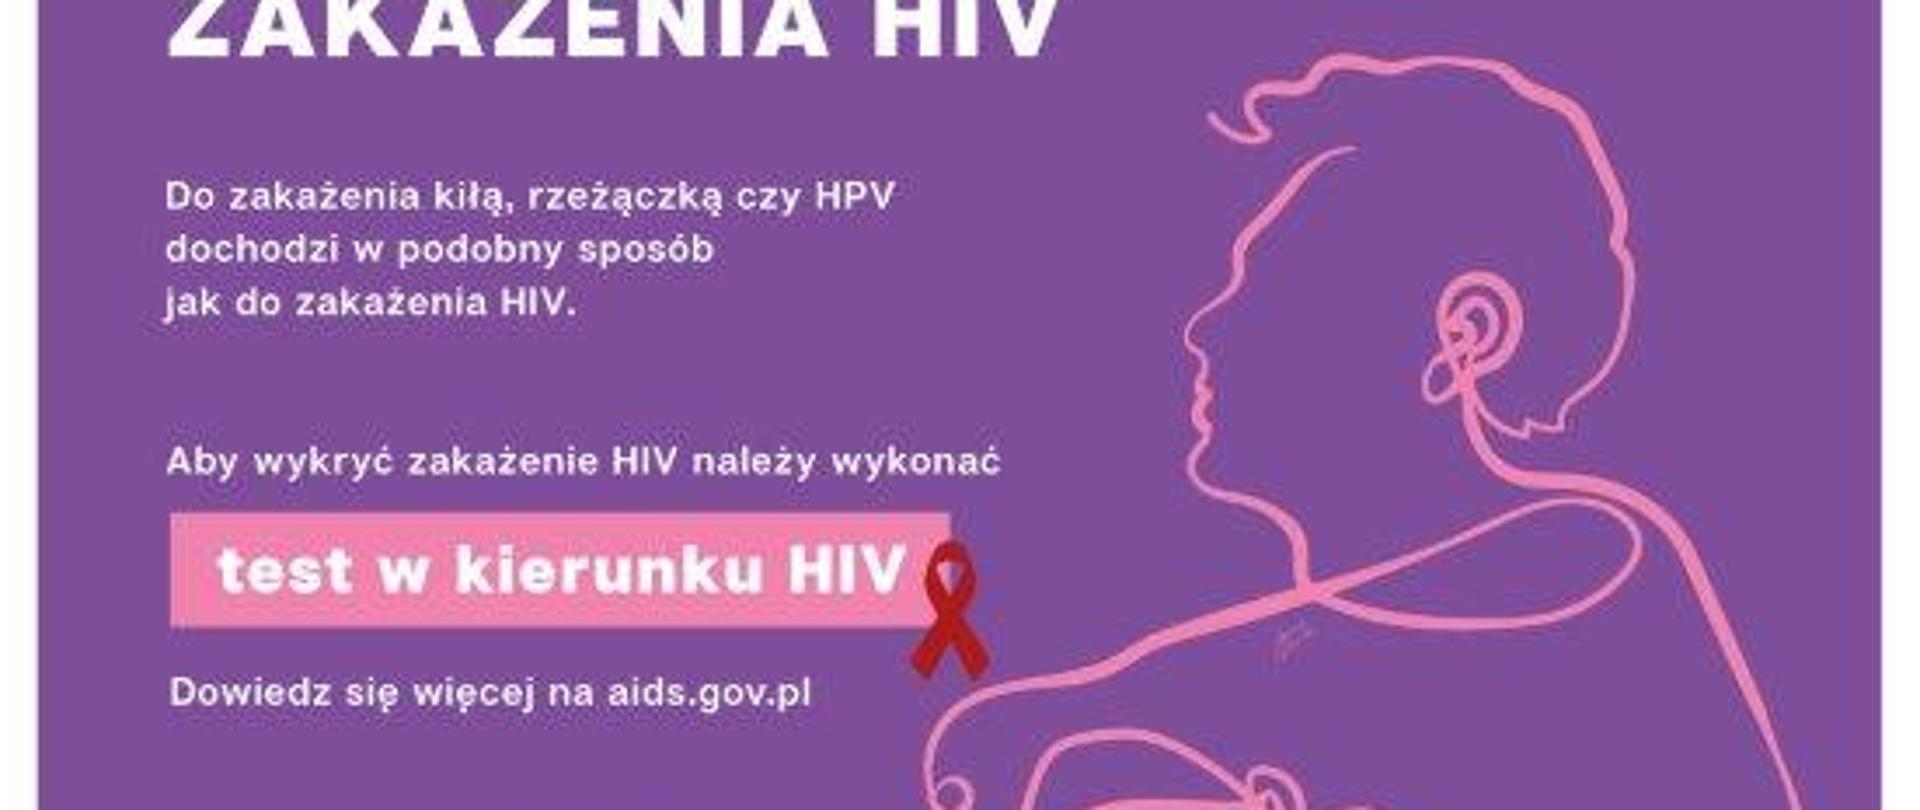 Kampania profilaktyczna HIV/AIDS "Czy wiesz, że..."